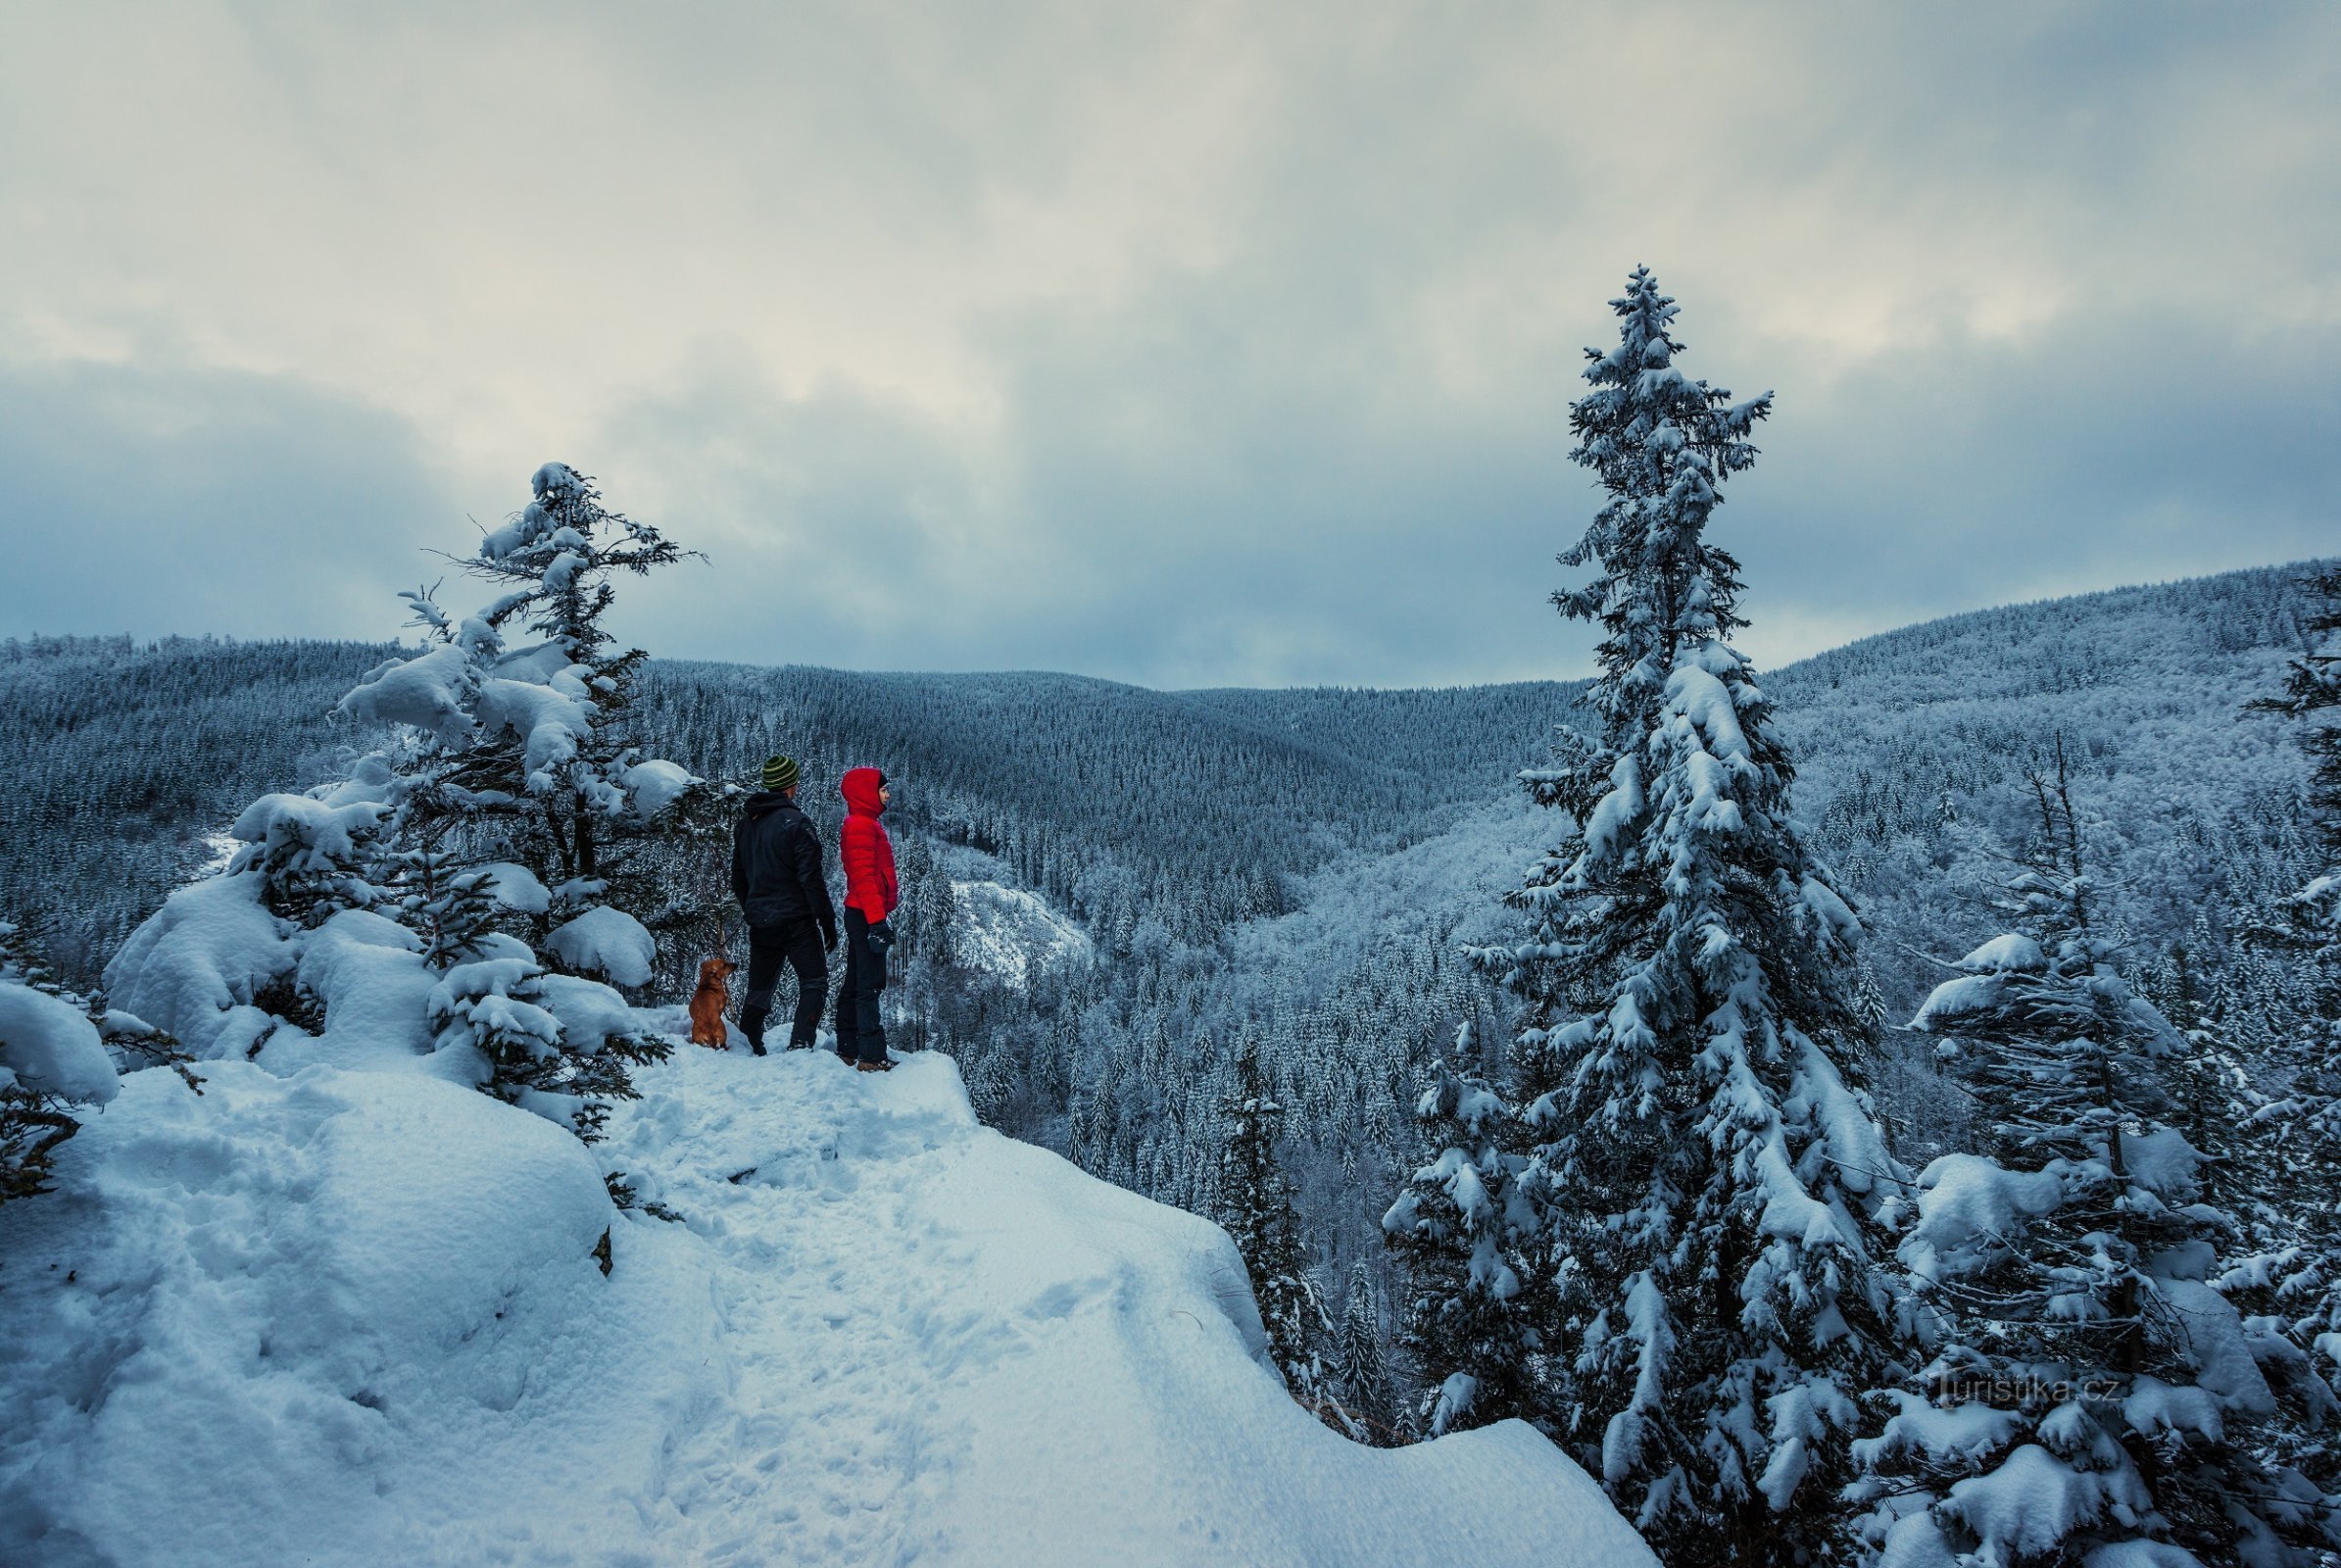 No solo esquís o esquís de fondo, ¡el senderismo de montaña en invierno tiene su propia magia!